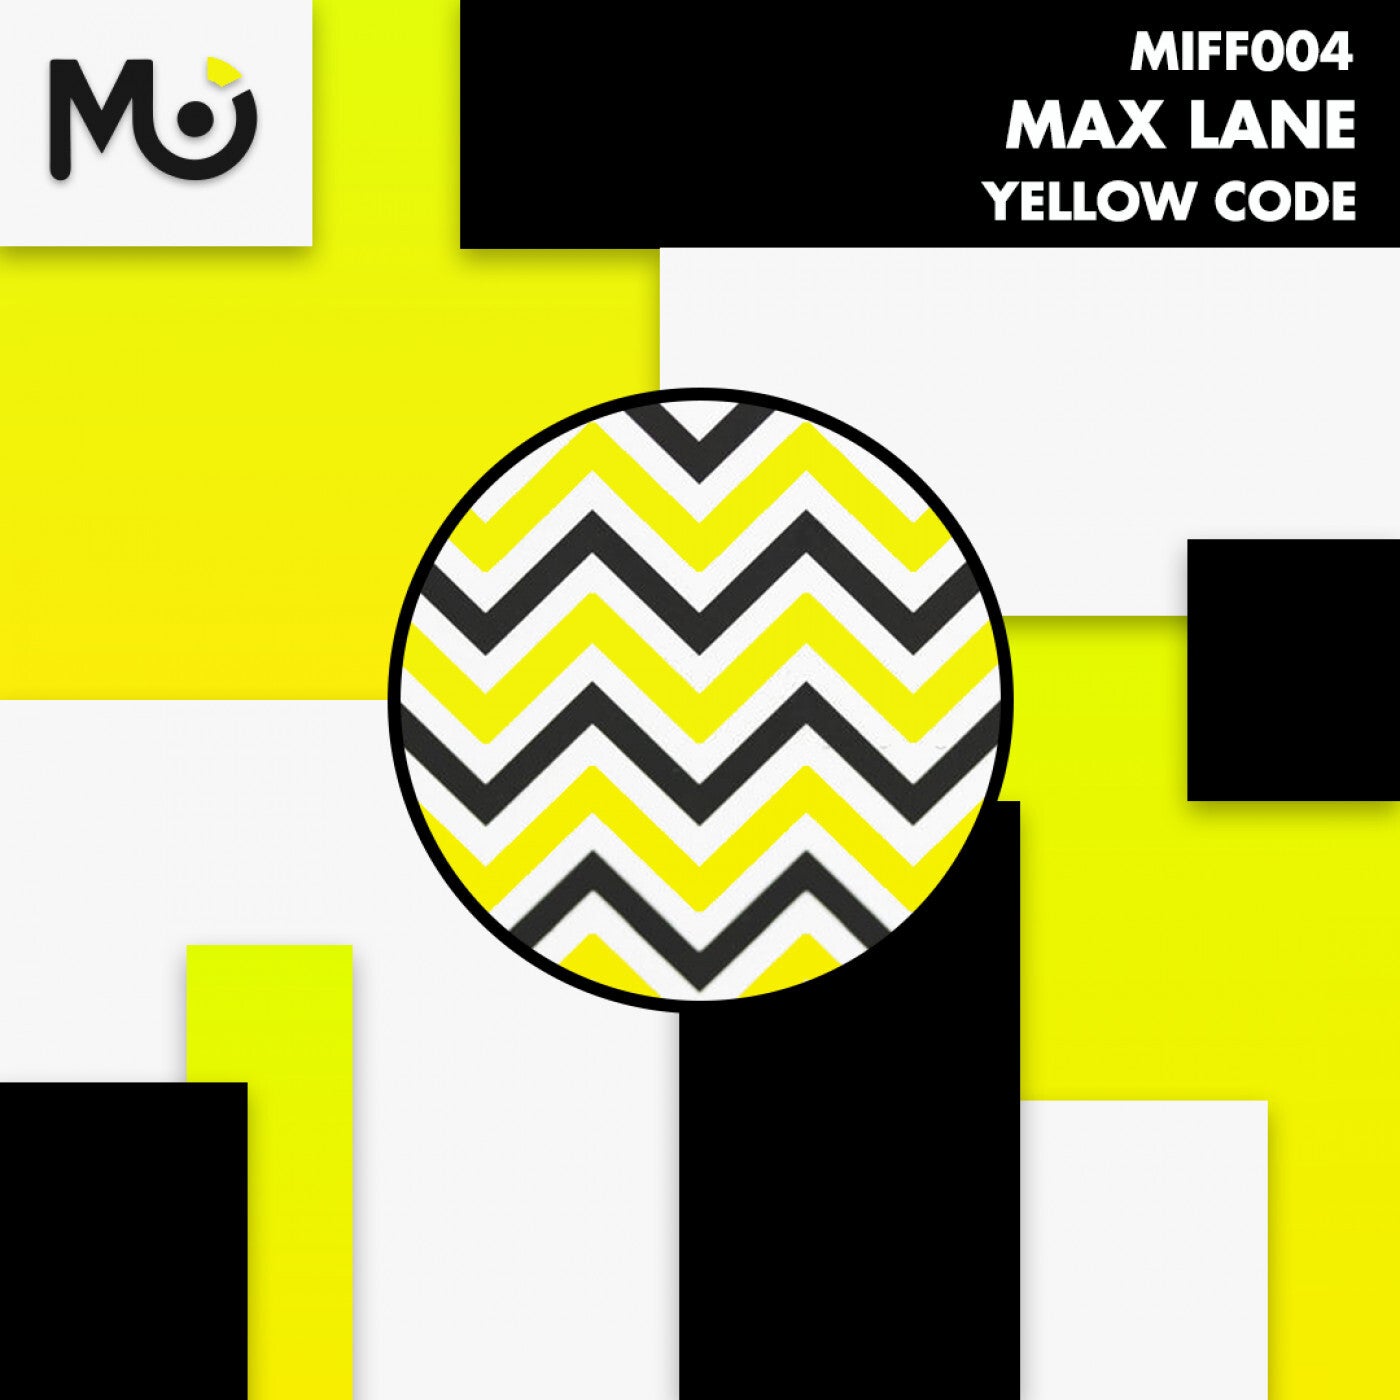 Max Lane – Yellow Code [MIFF004]